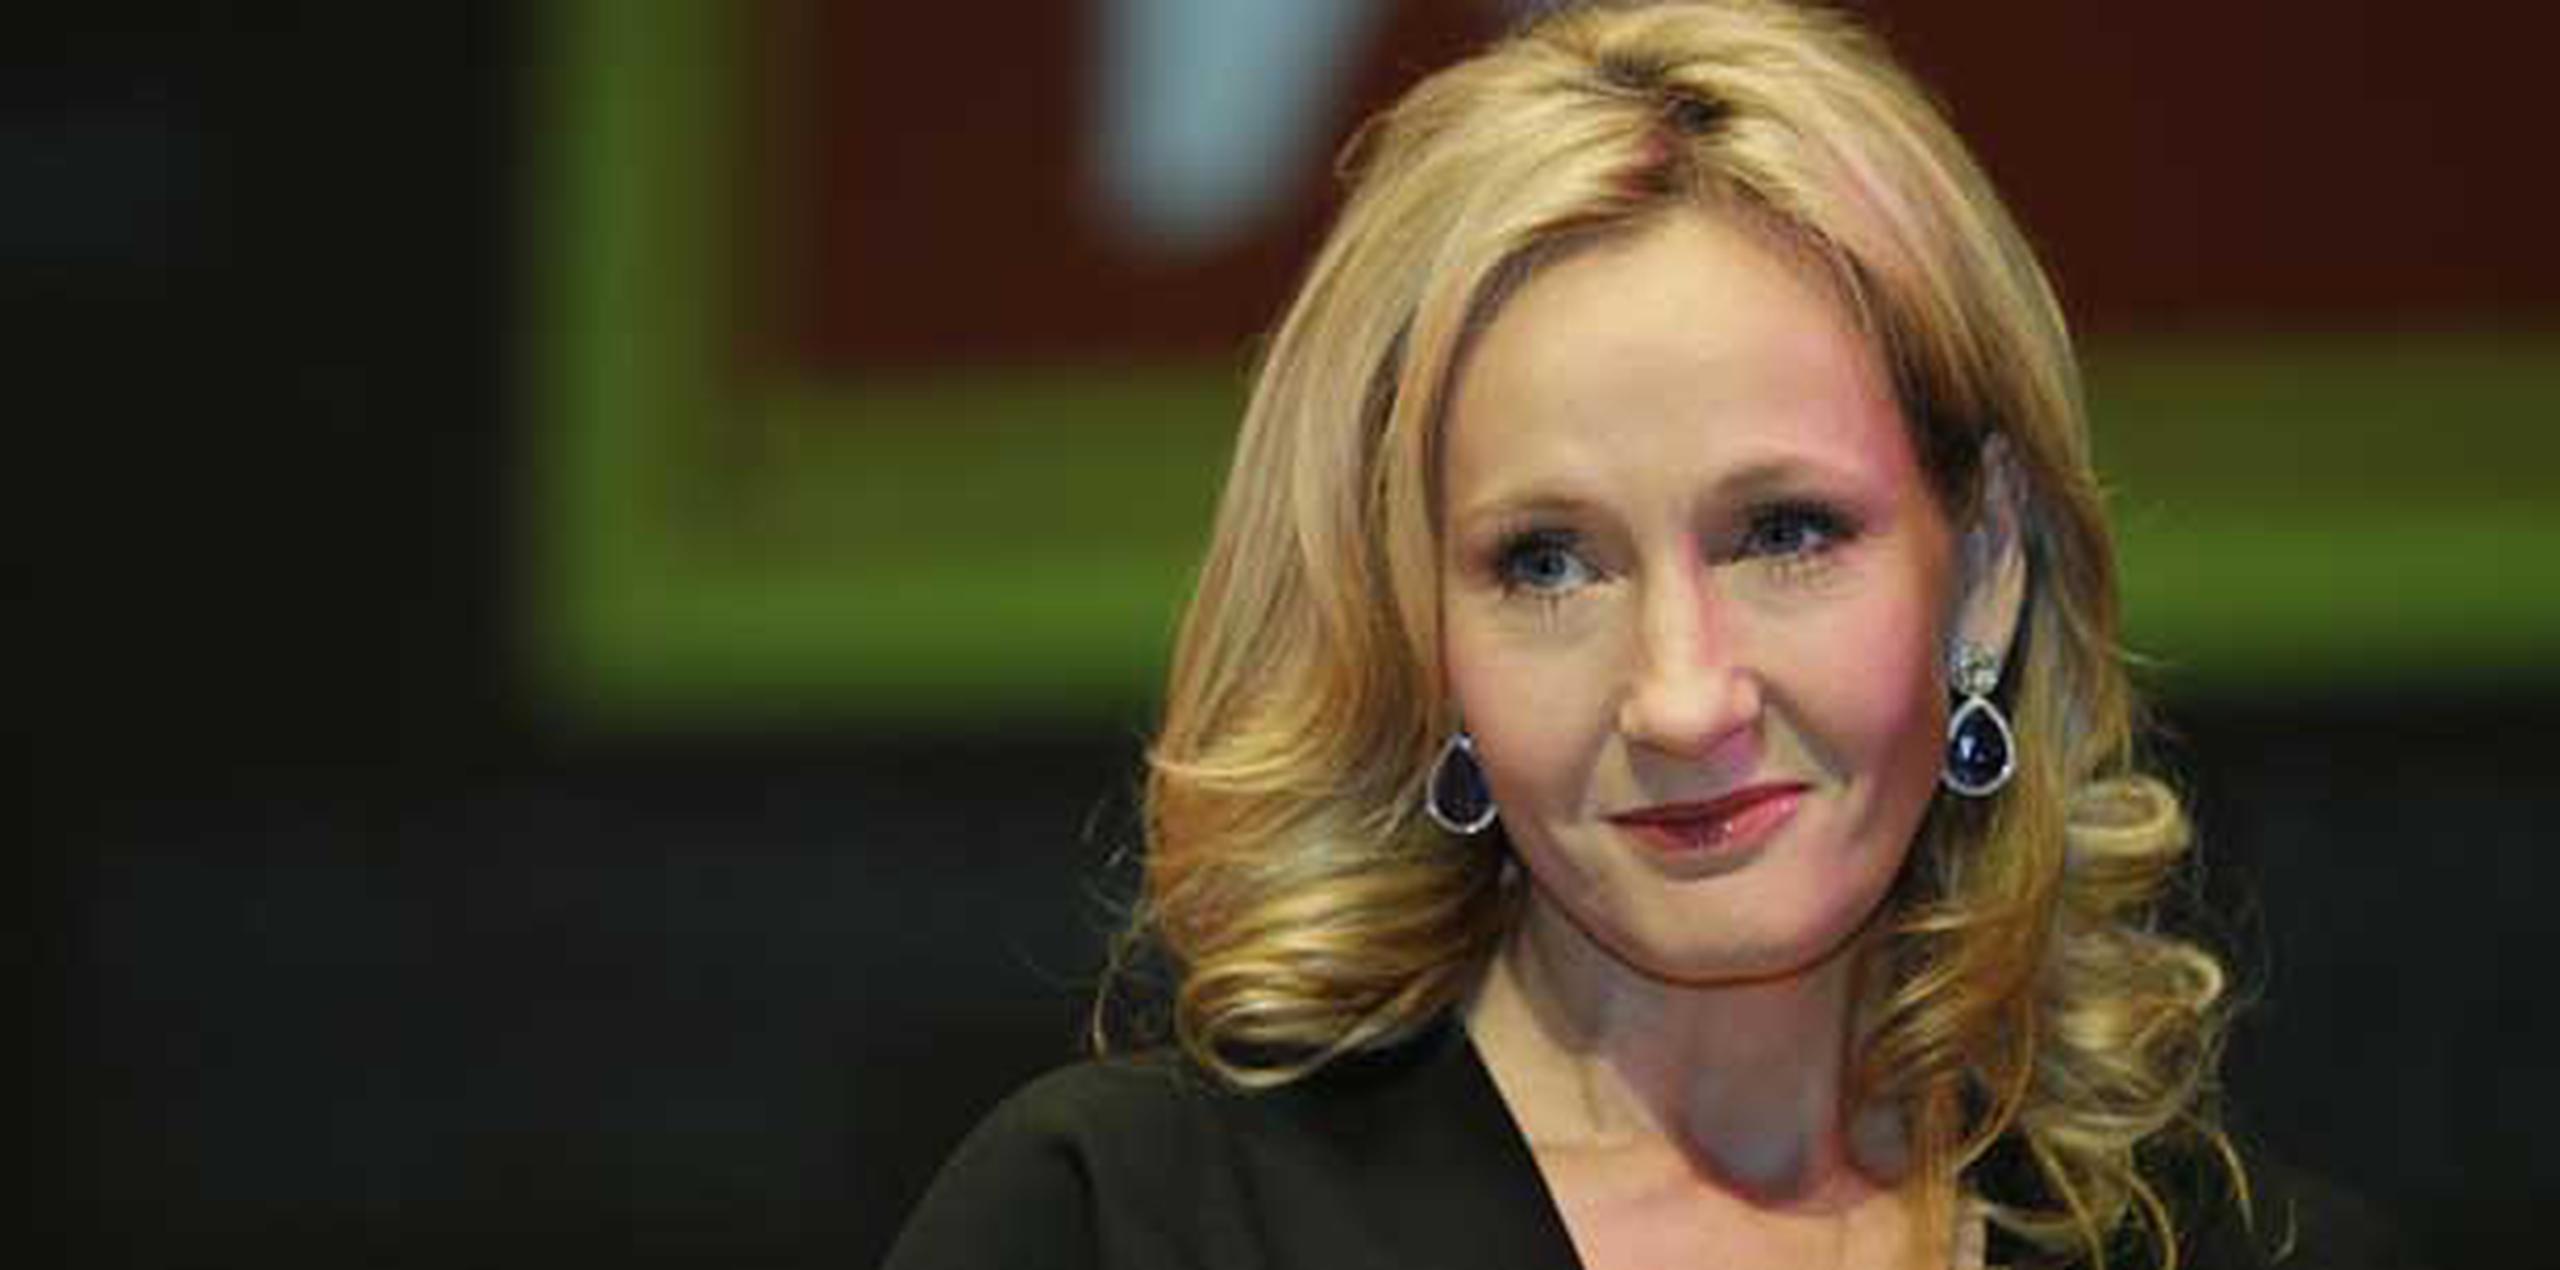 Las novelas de  J.K. Rowling protagonizada por Harry Potter han vendido más de 450 millones de ejemplares en el mundo y se adaptaron para ocho películas de Warner Bros.  (AP/Archivo/Lefteris Pitarakis)